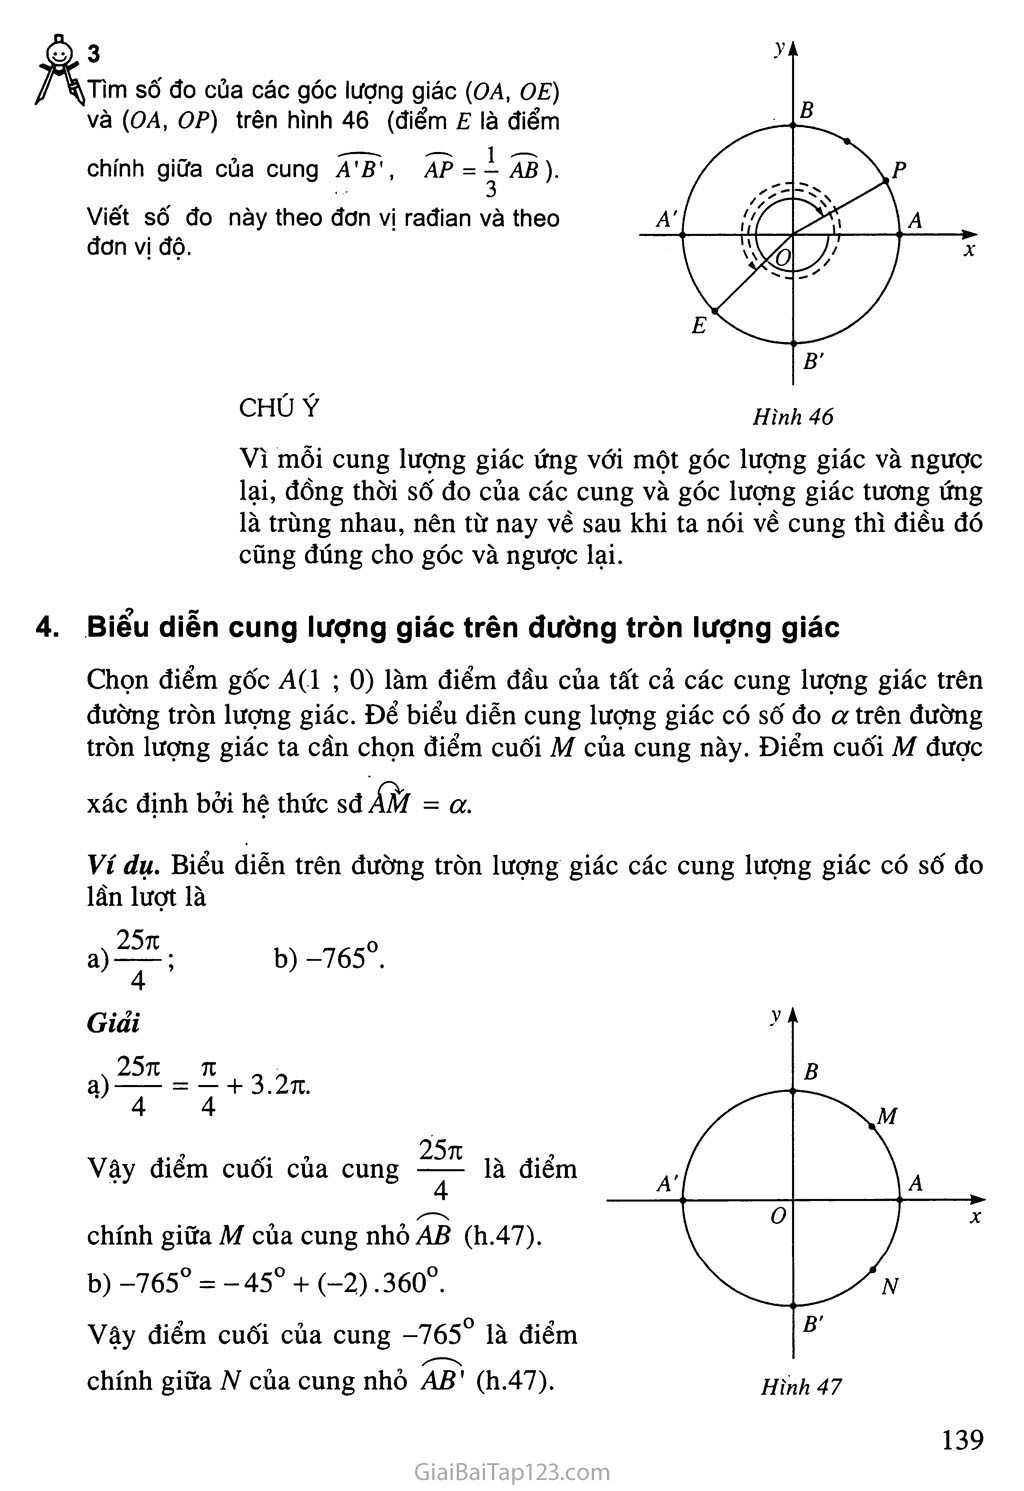 Bài 1. Cung và góc lượng giác trang 8